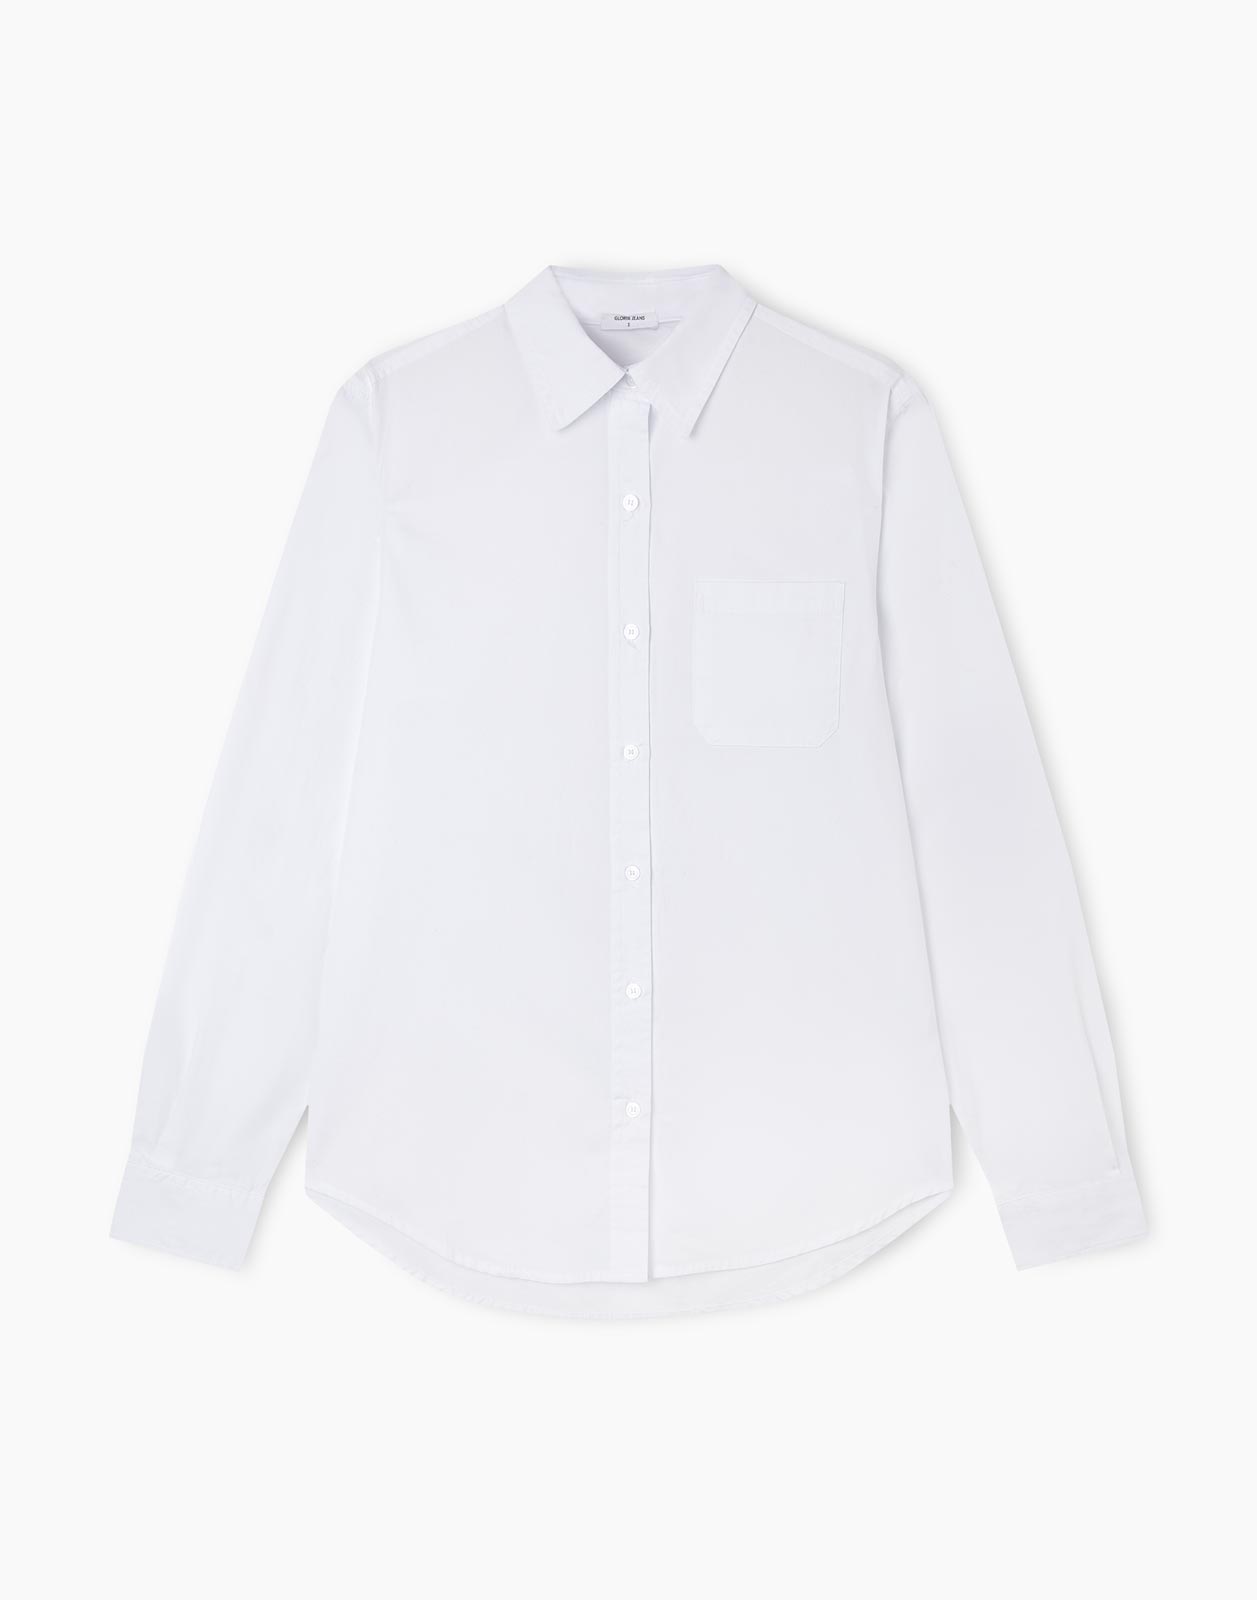 Рубашка женская Gloria Jeans GSU001054 белая XS (38-40)